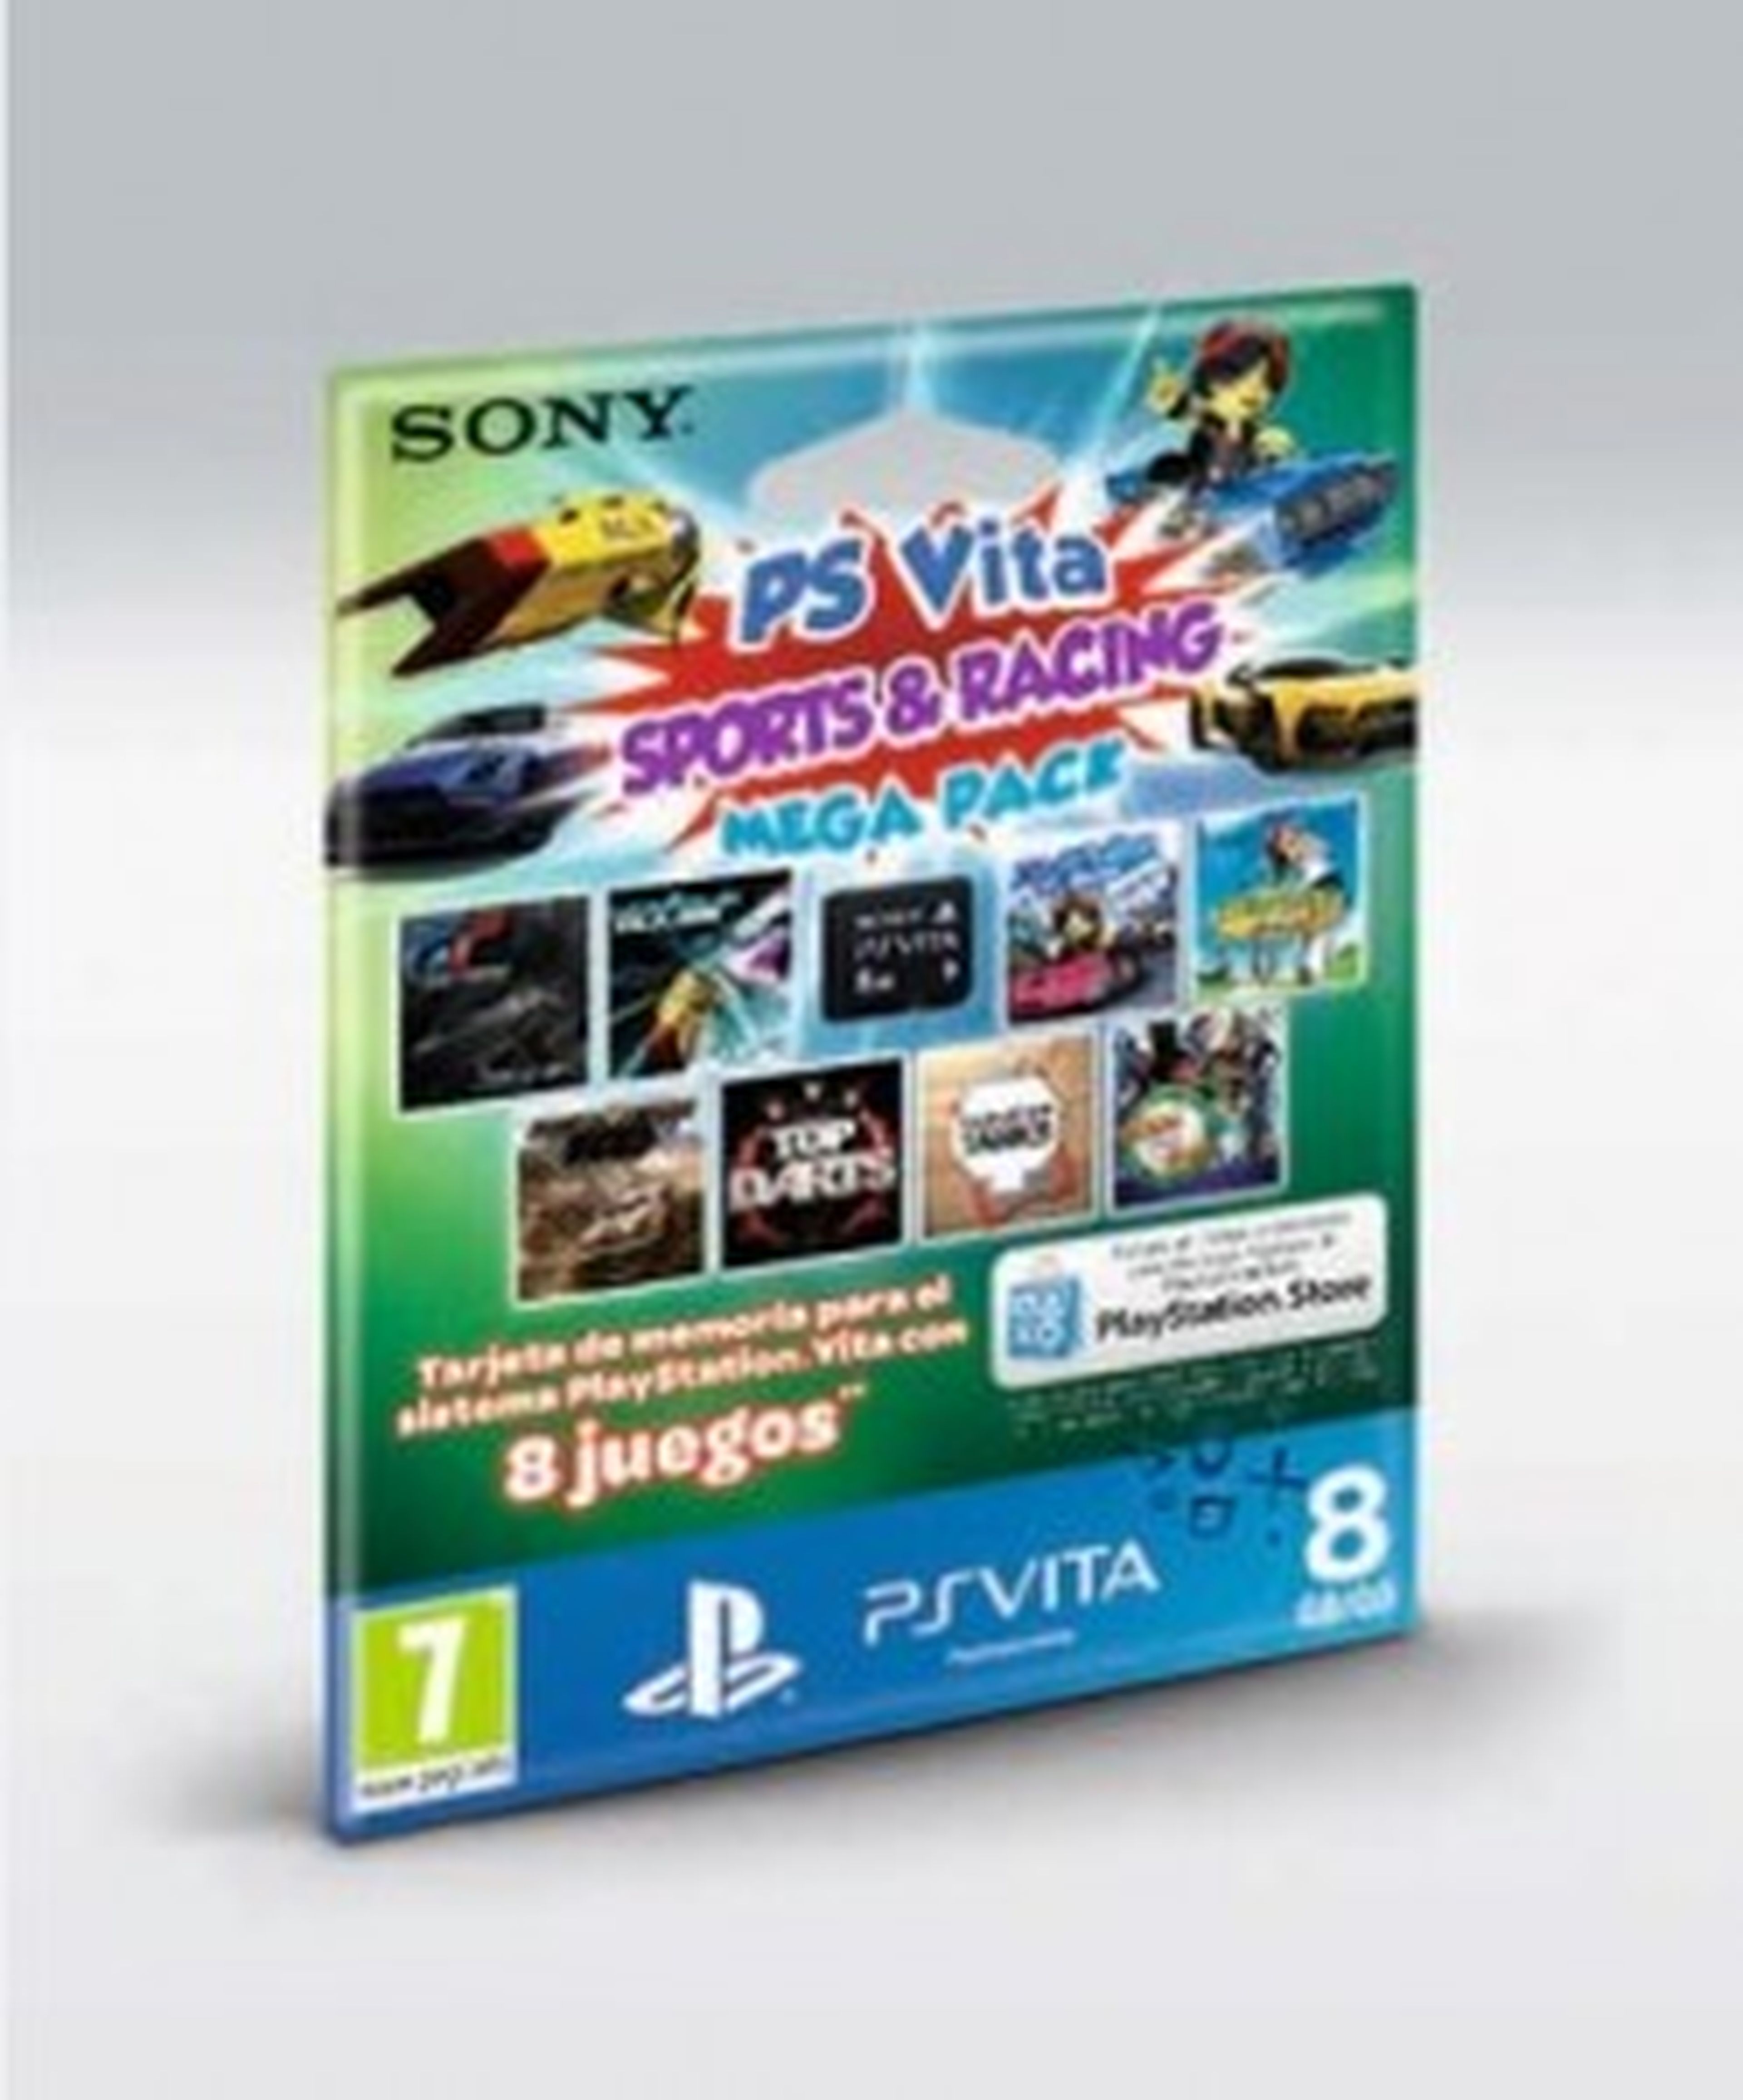 Nuevo pack de PS Vita con 8 juegos